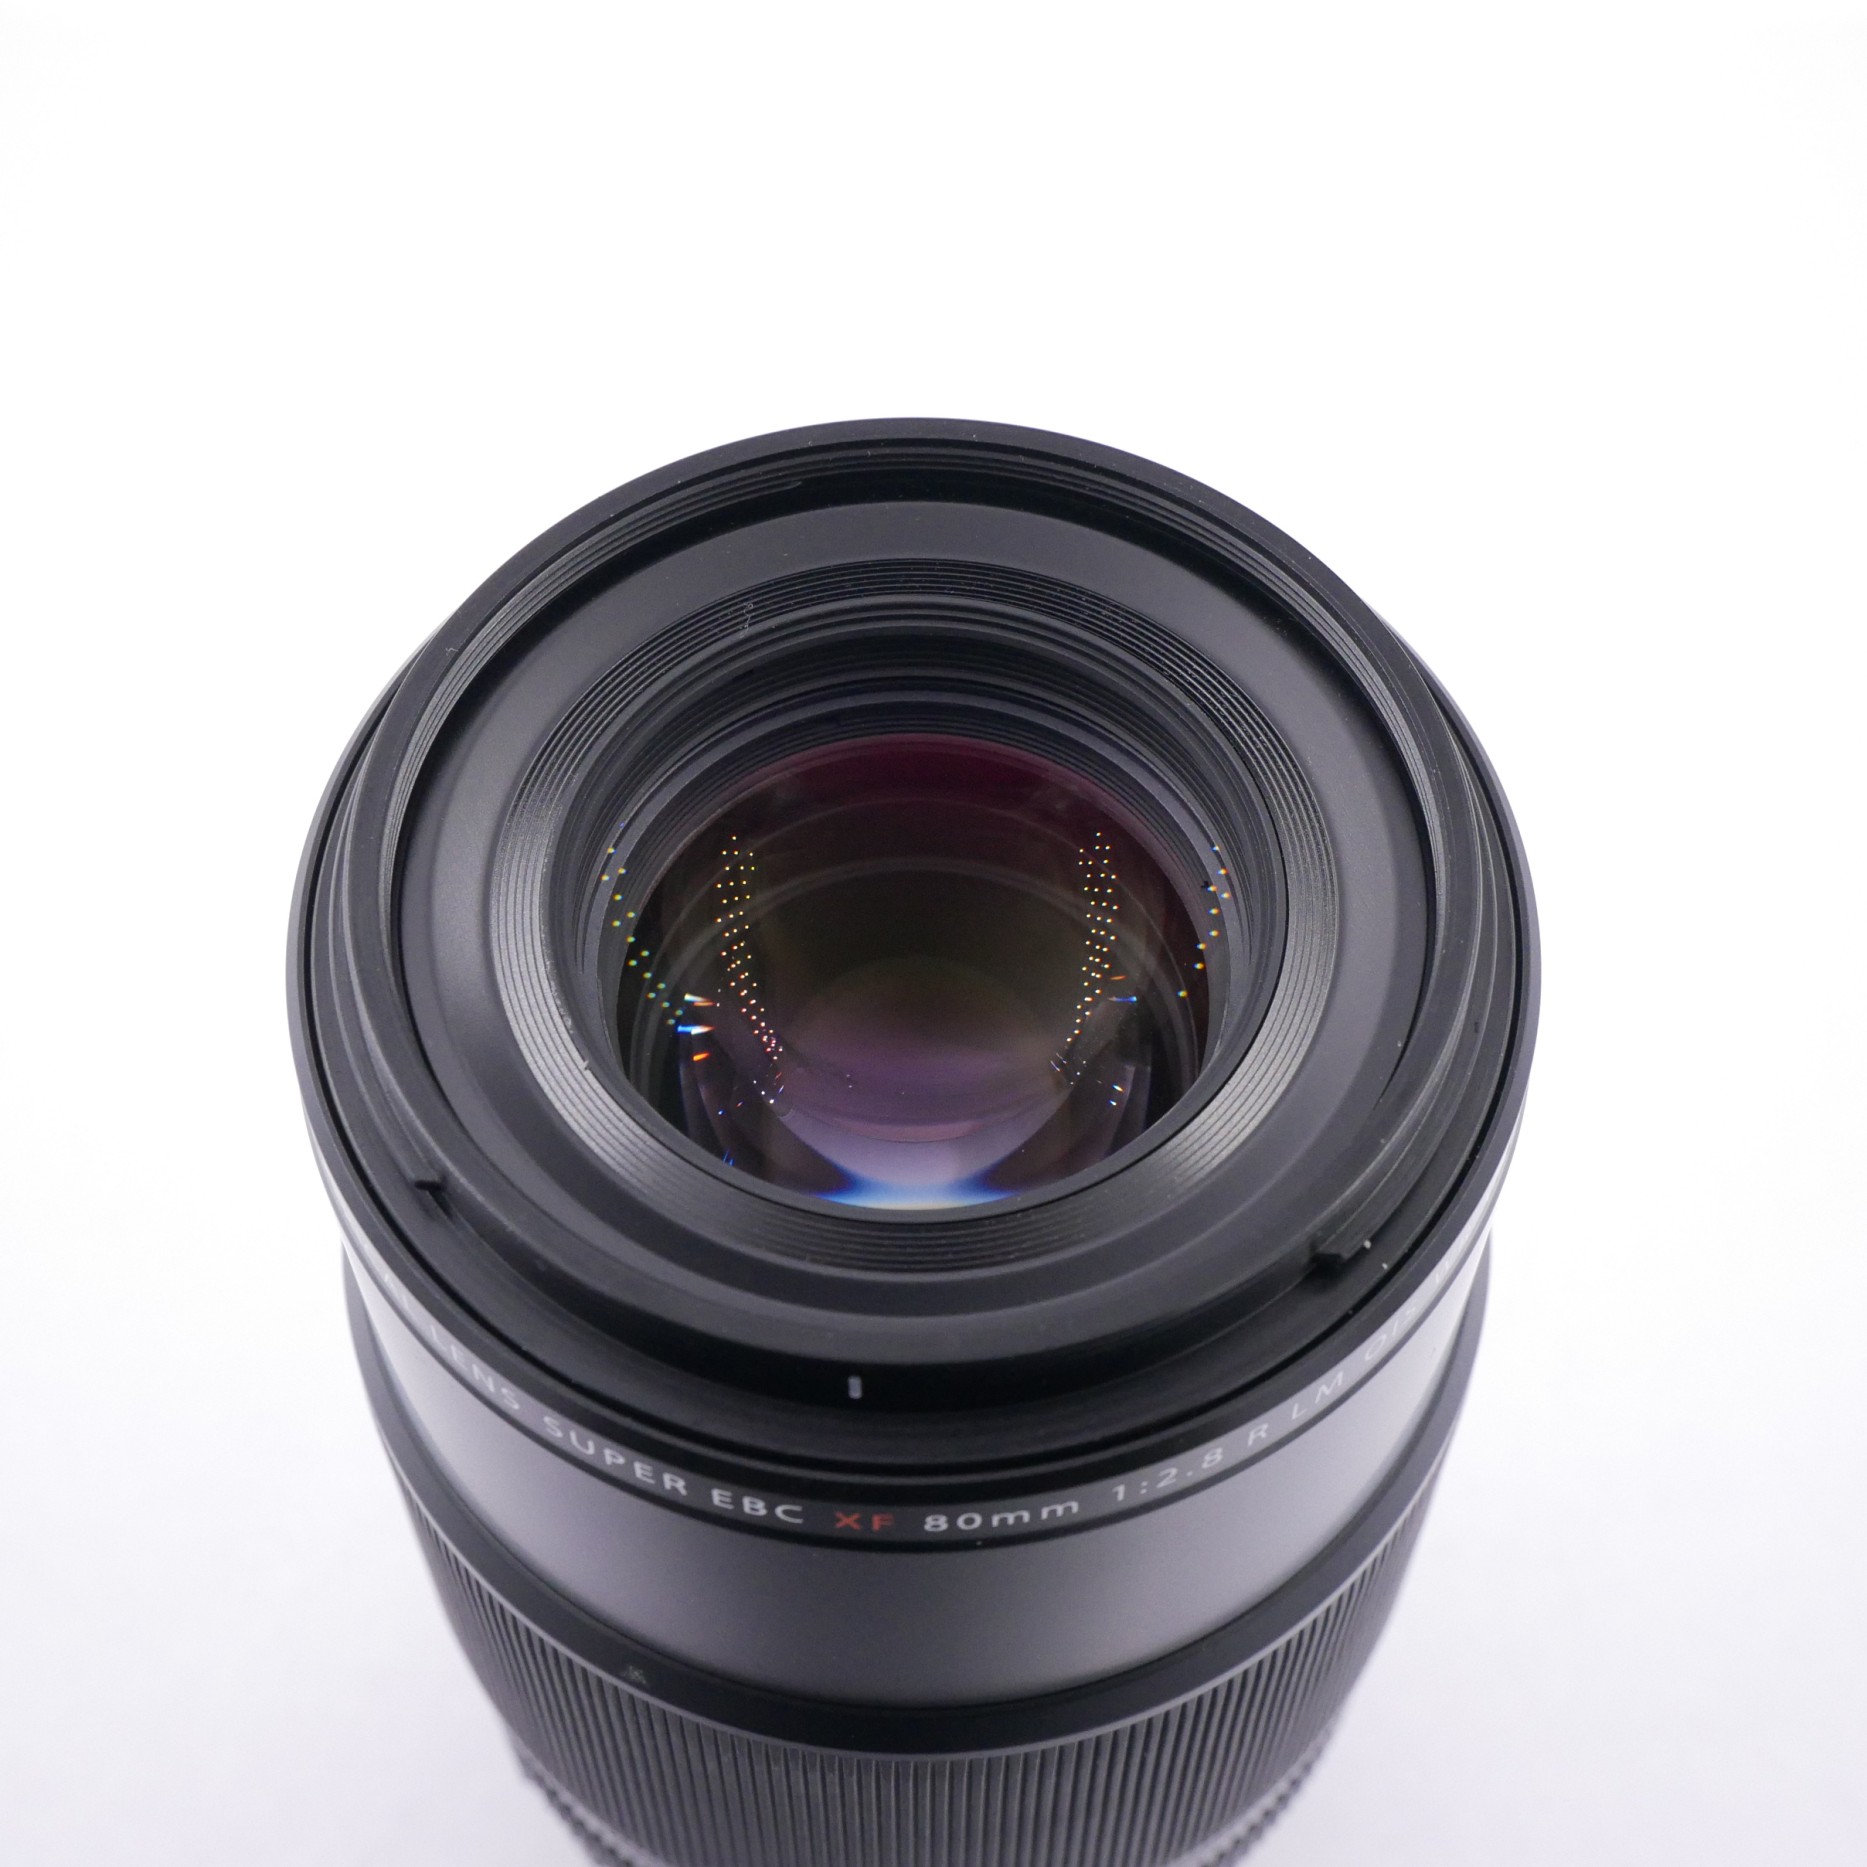 S-H-EREJEX_2.jpg - Fujifilm 80mm F2.8 LM OIS WR Macro Lens